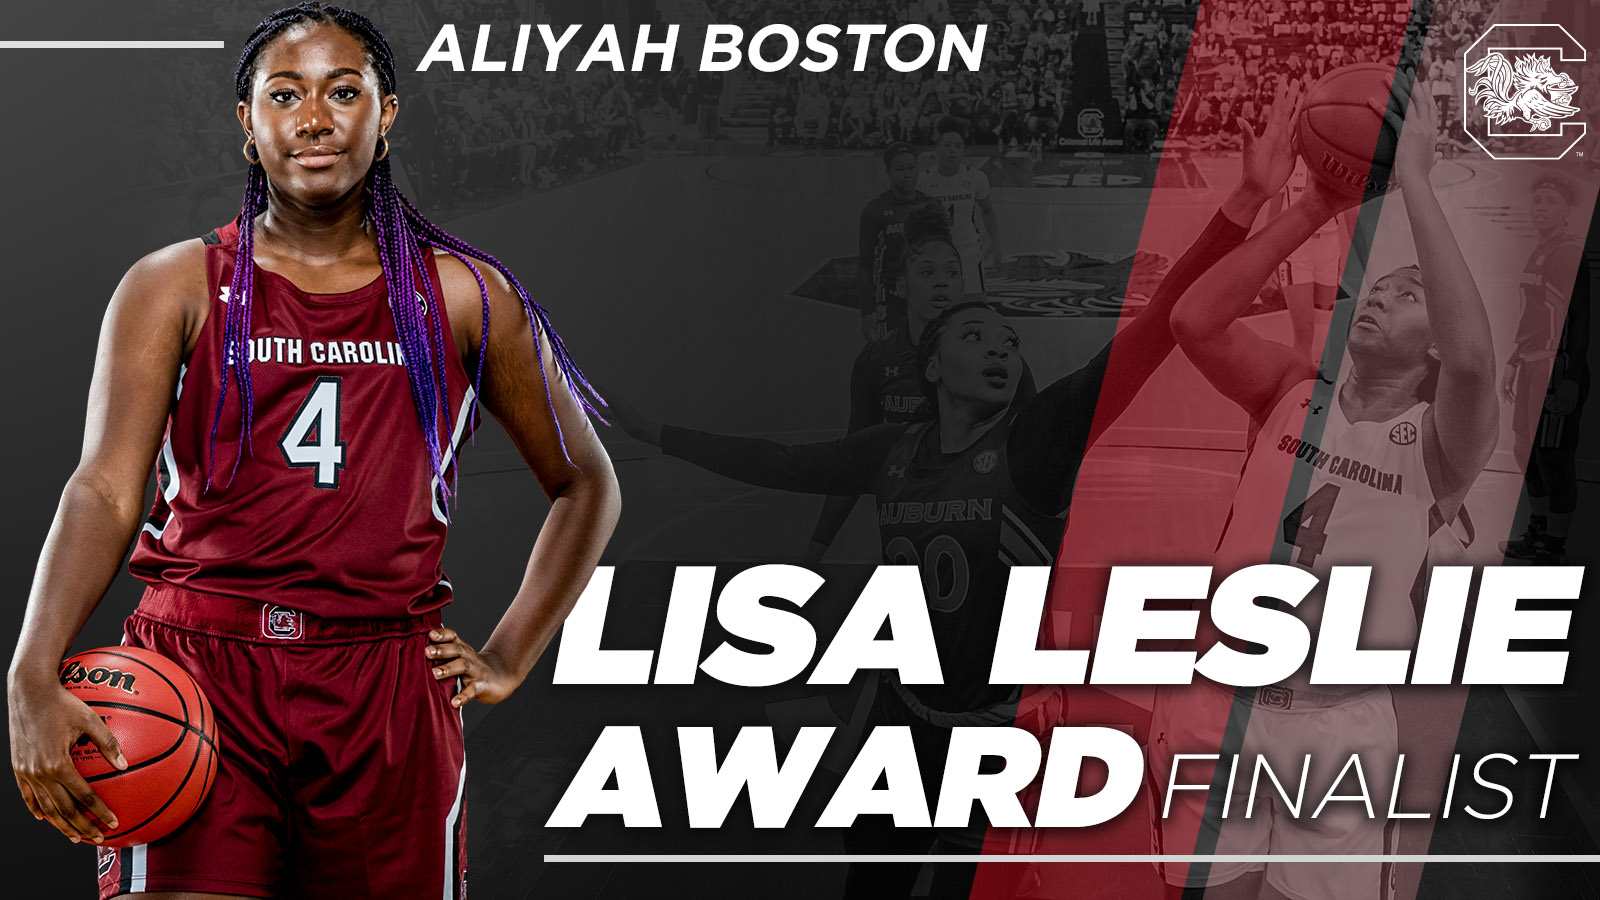 Boston Named Lisa Leslie Award Finalist